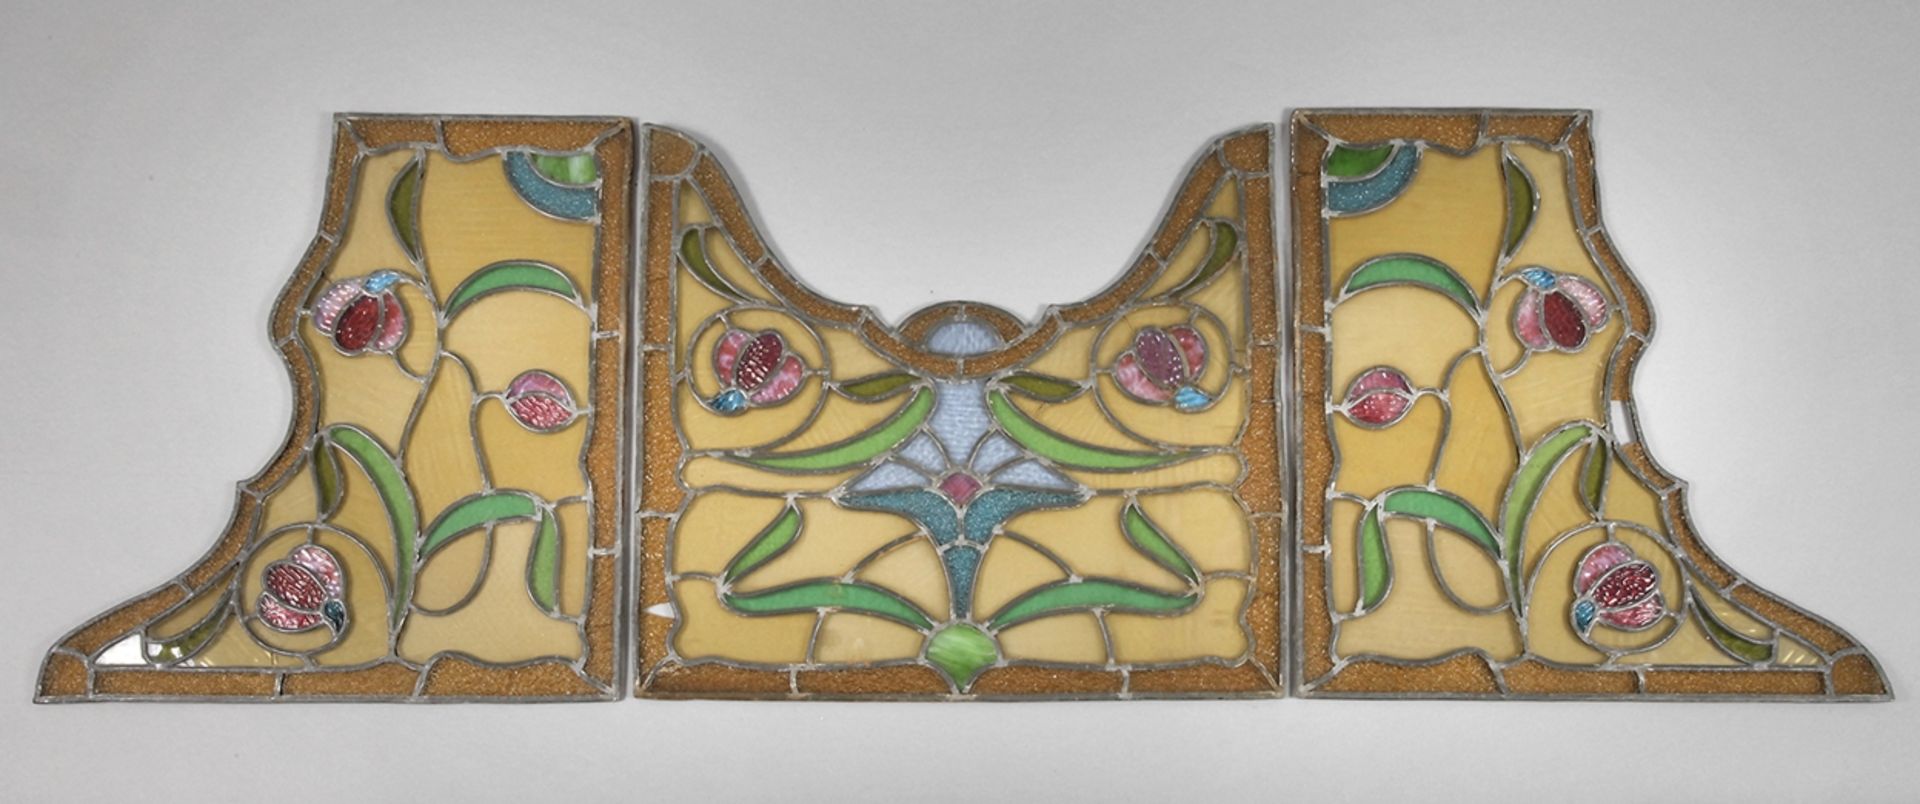 Bleiglasfensterum 1900, florale Motive aus Farb- und Ornamentglas, dreiteilig, ohne Rahmen, rest.